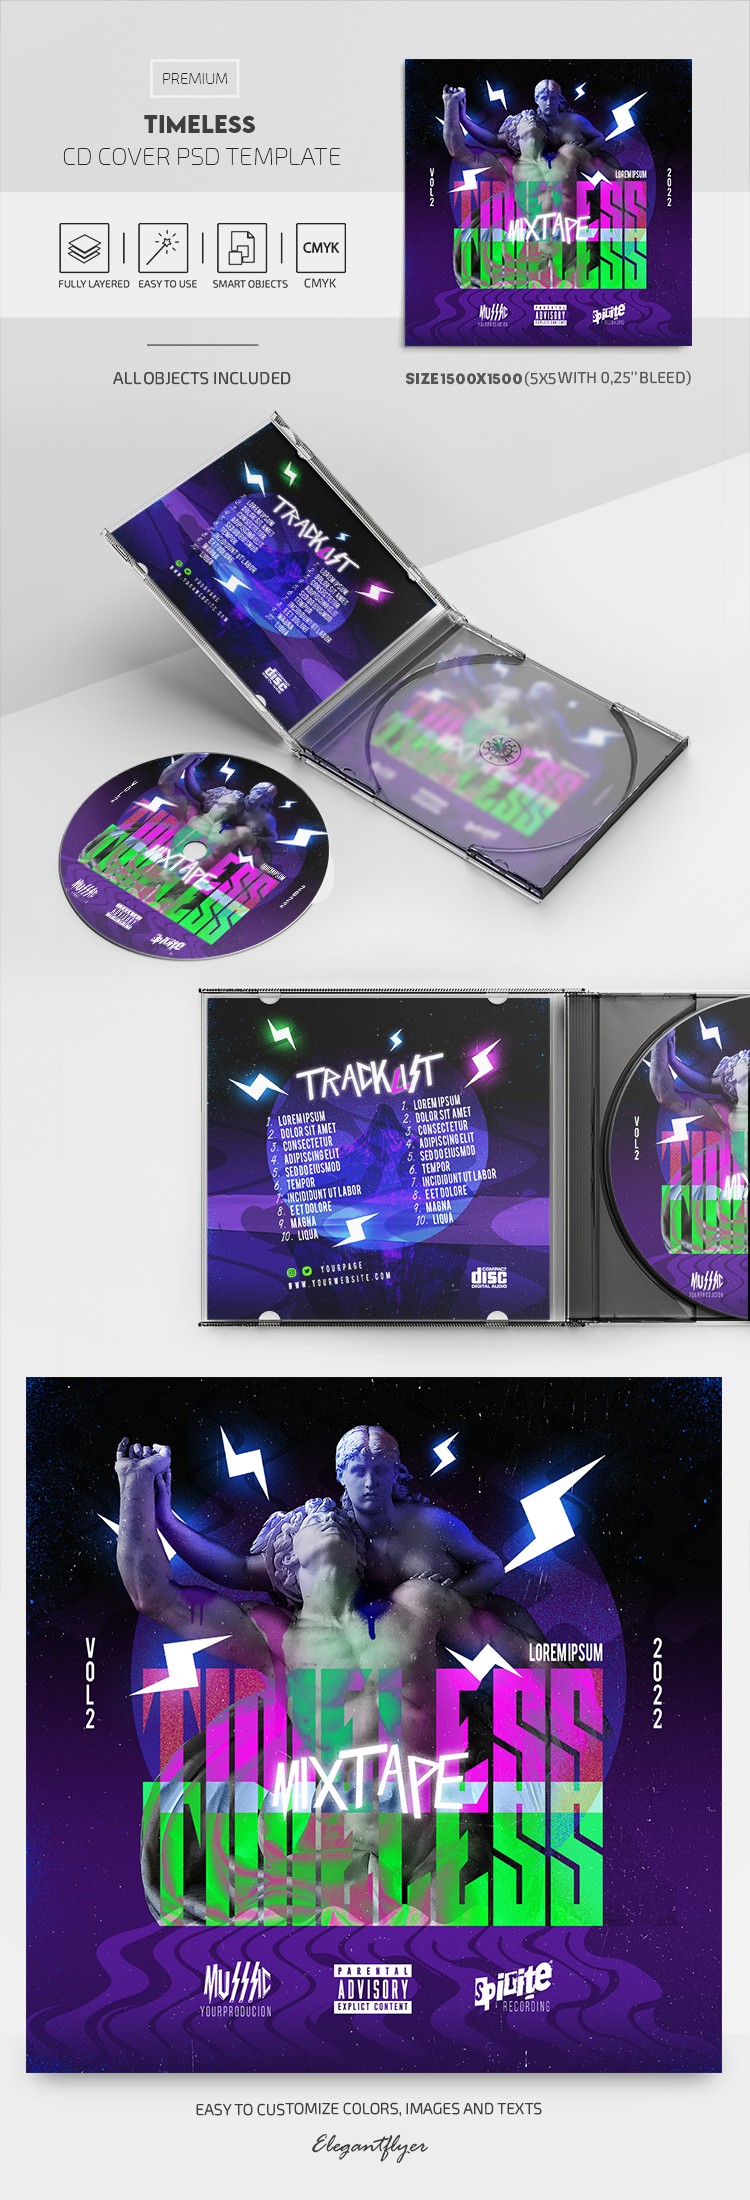 Timeless CD Cover by ElegantFlyer